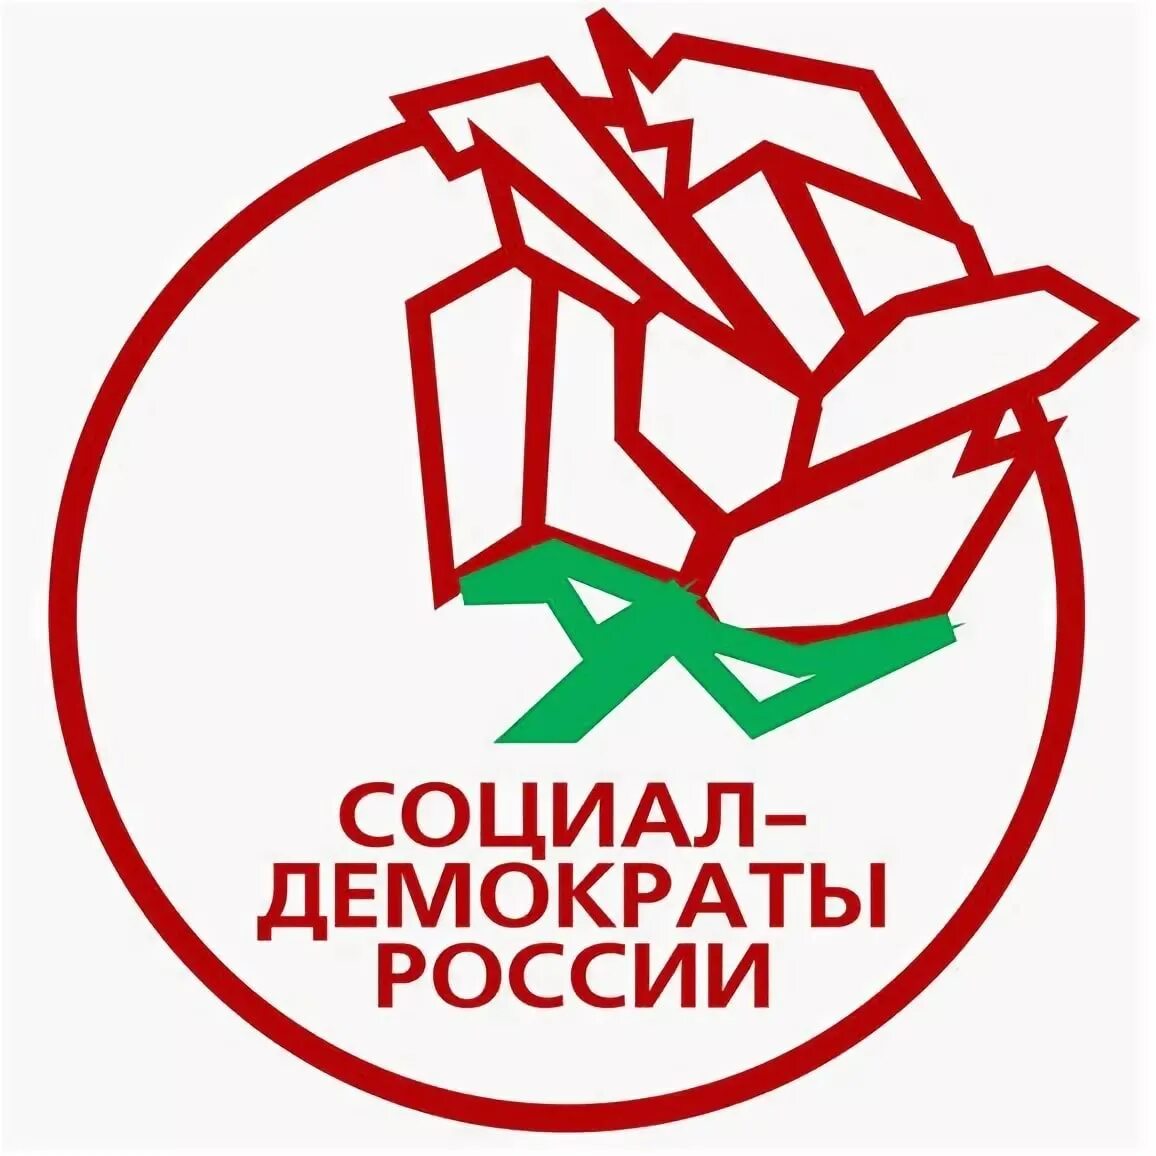 Демократия партия россии